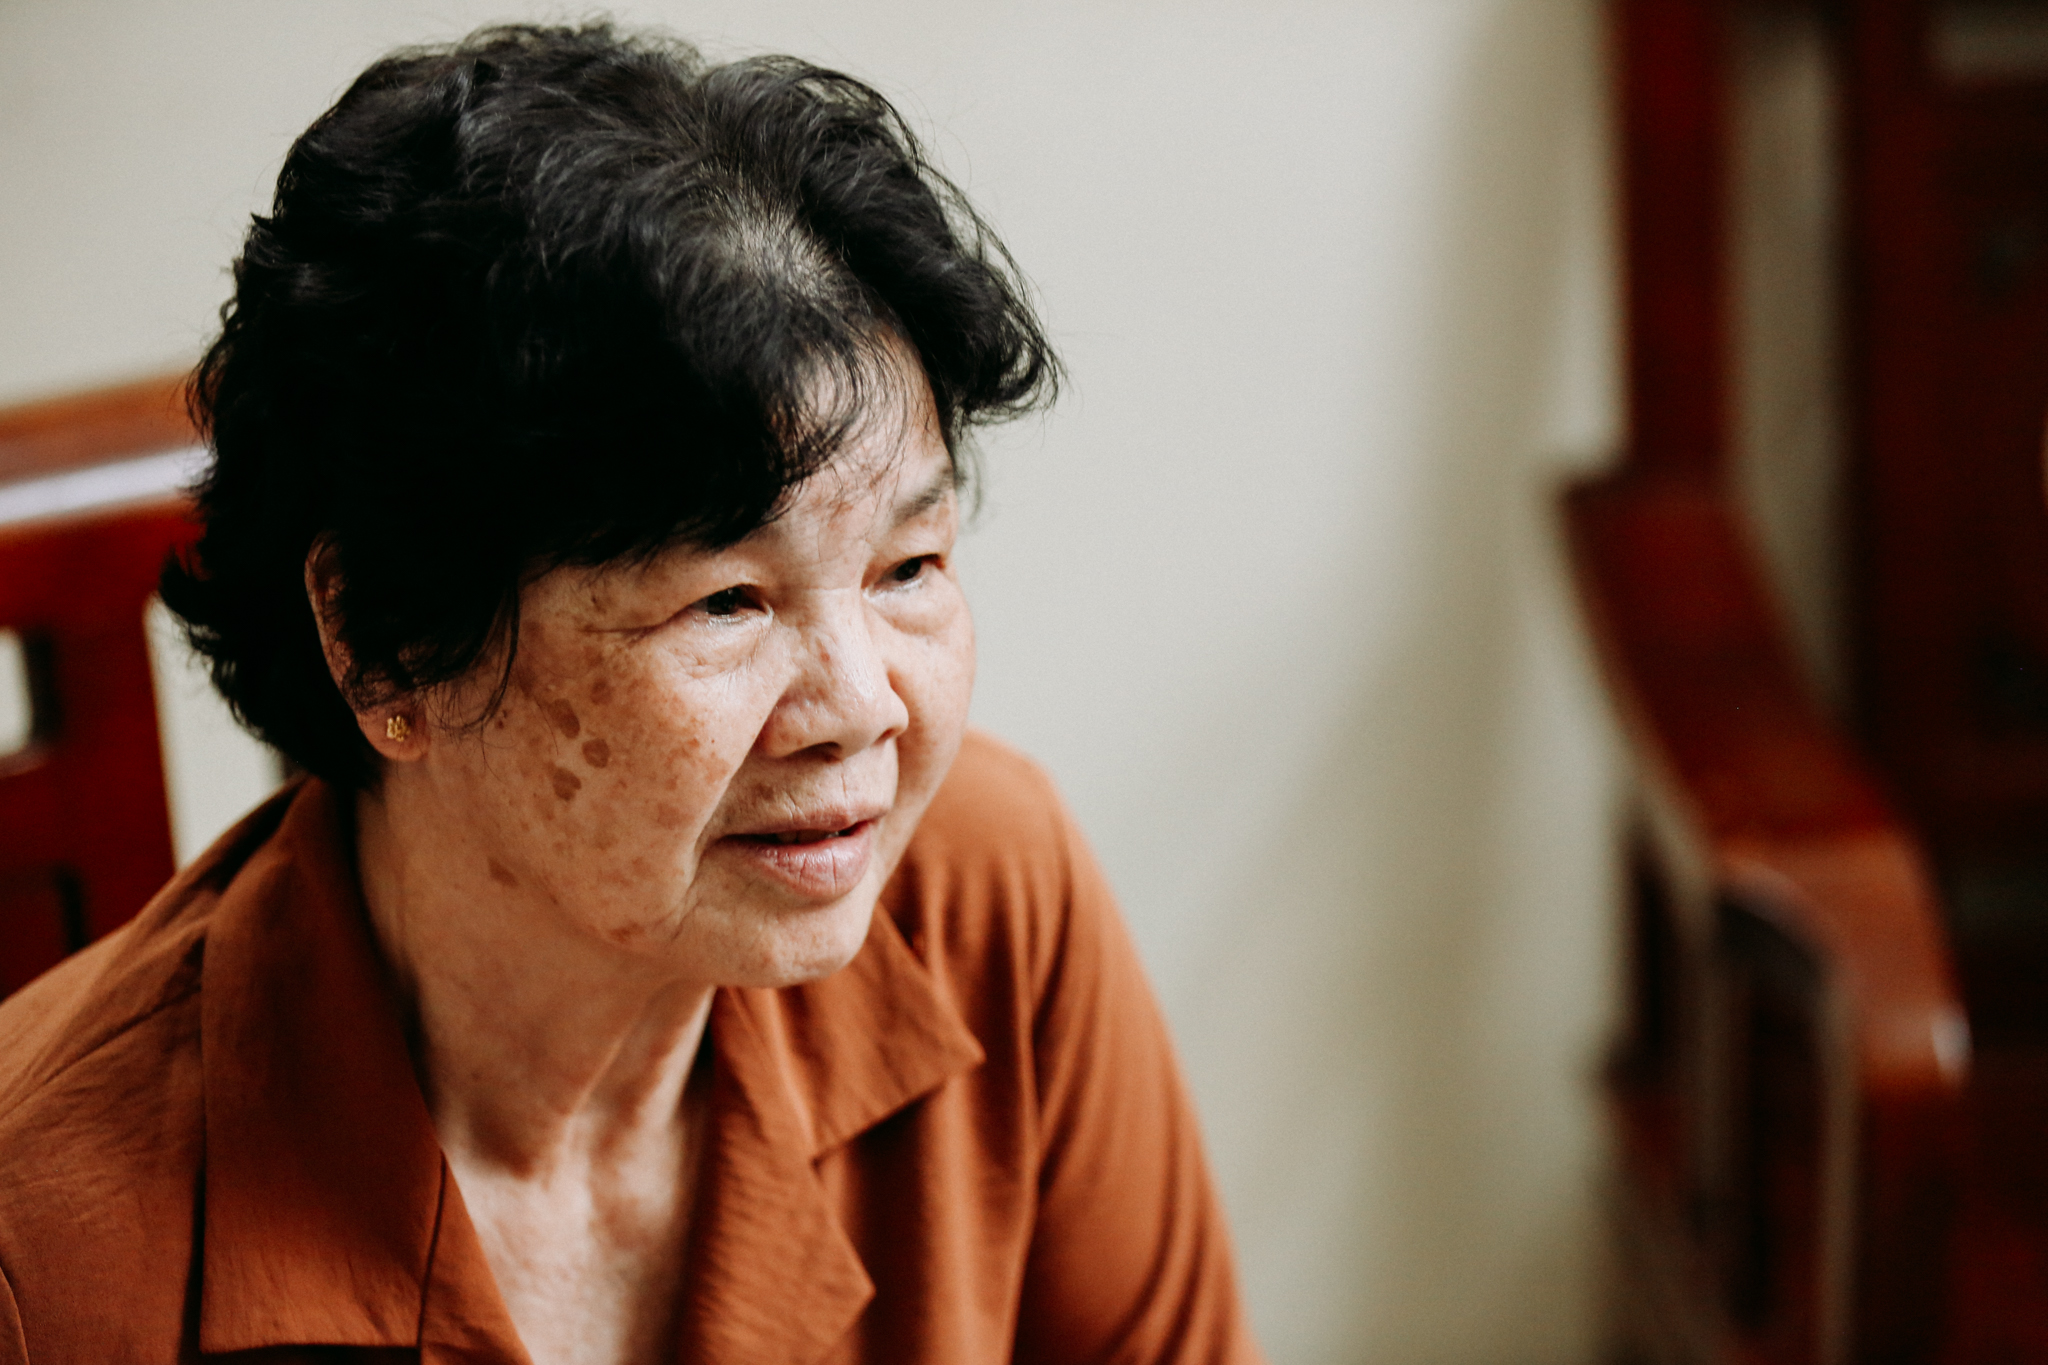 A más de 70 años de edad, Bui Thi Van nunca olvida los recuerdos de ese período. (Fuente: VietnamPlus)